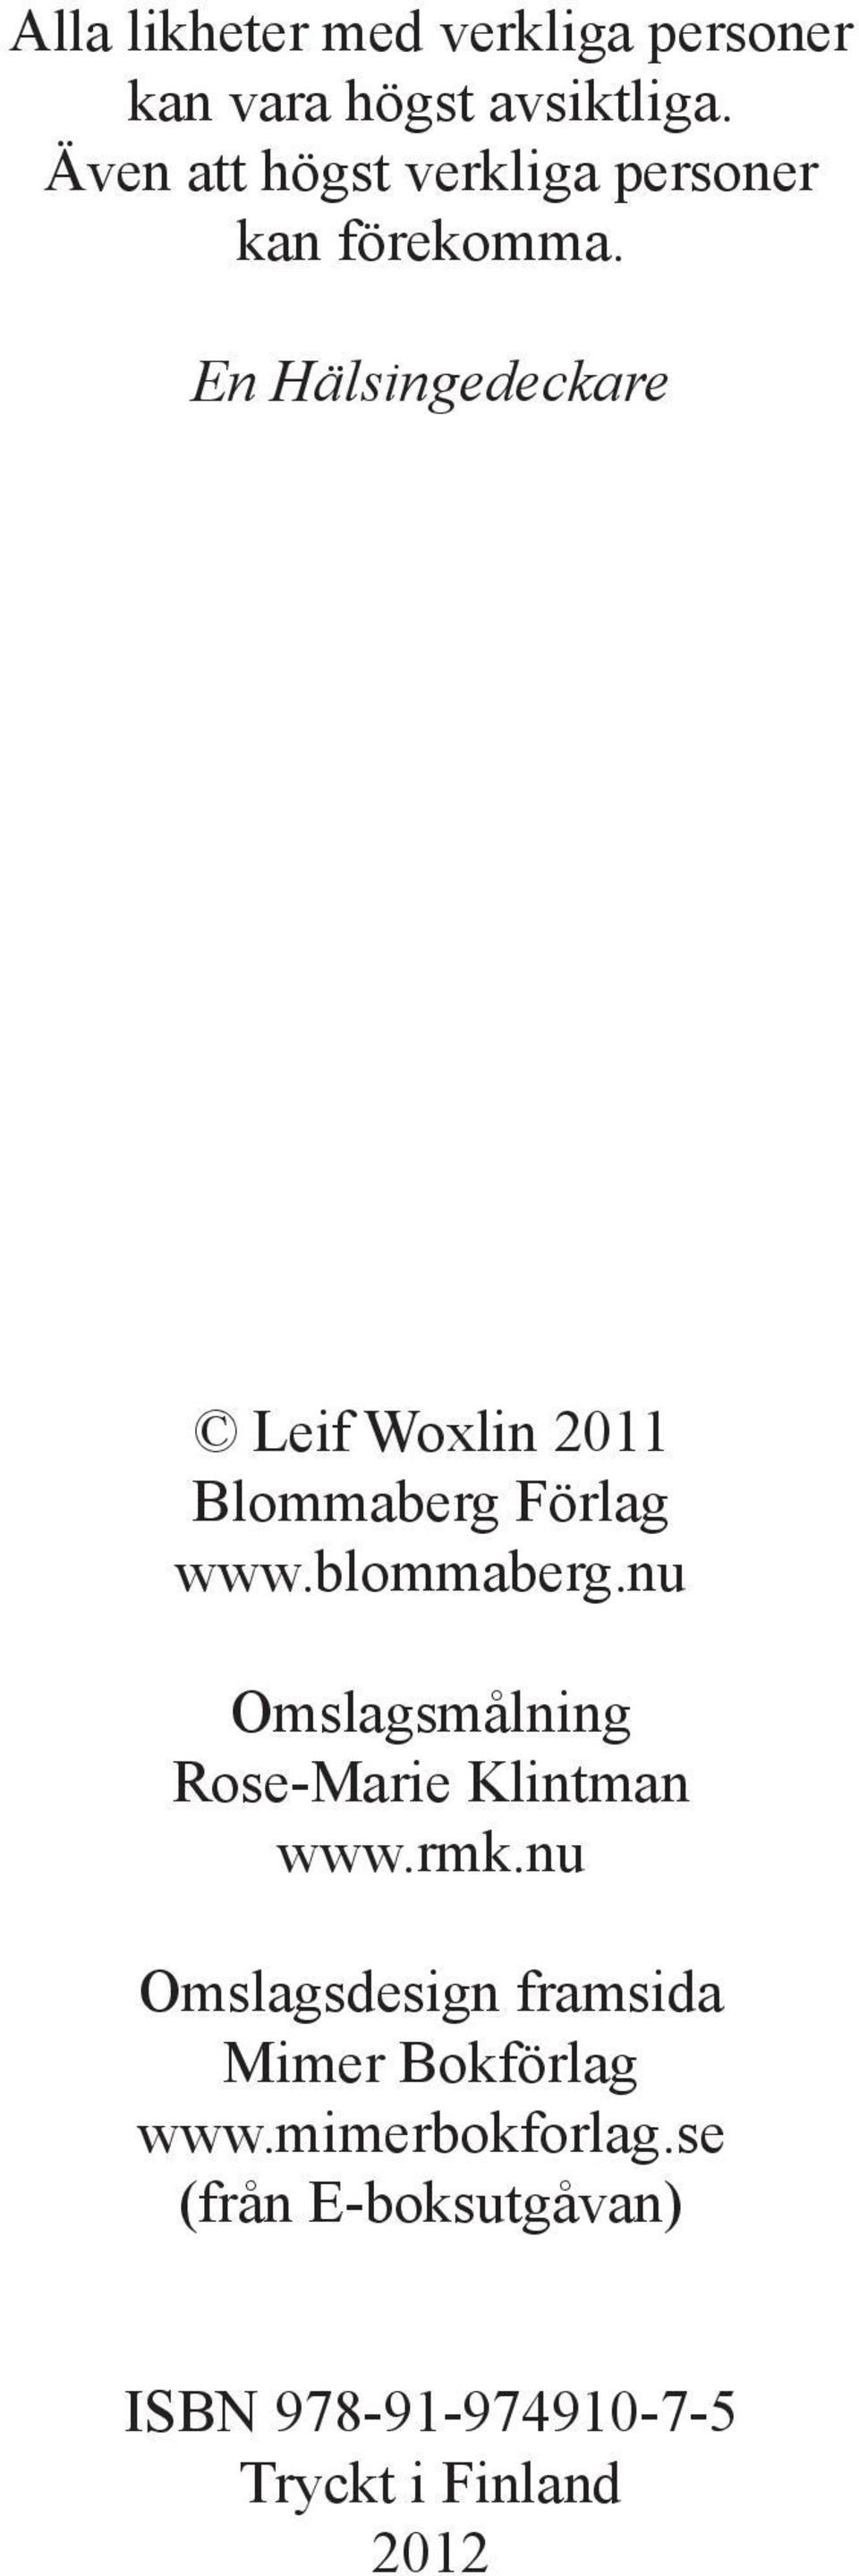 En Hälsingedeckare Leif Woxlin 2011 Blommaberg Förlag www.blommaberg.